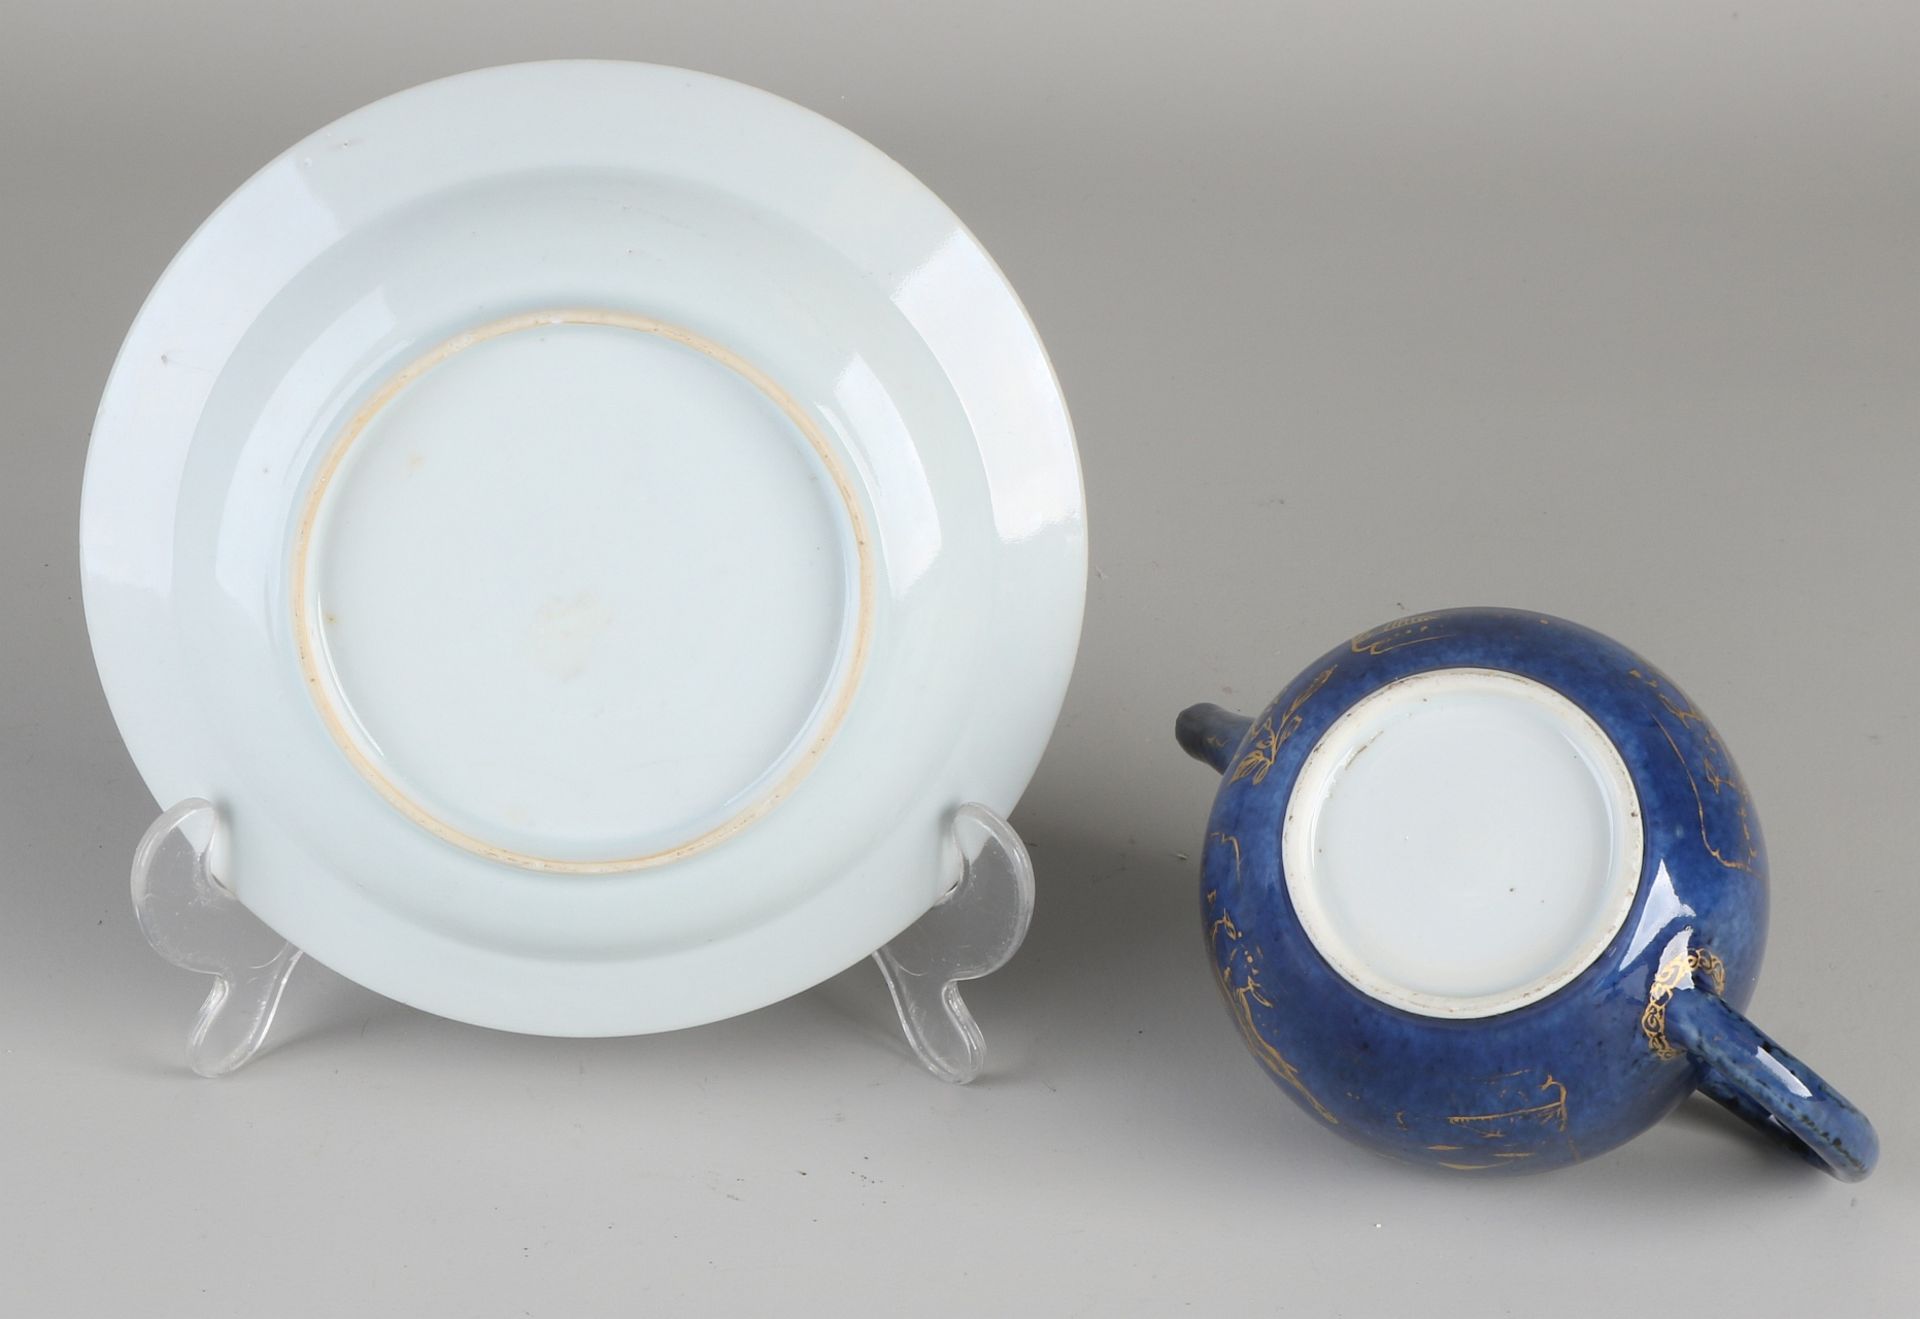 Chinesische Porzellanteekanne aus dem 19. Jahrhundert mit Untertasse. Blaue Glasur + Golddekor. A - Image 2 of 2